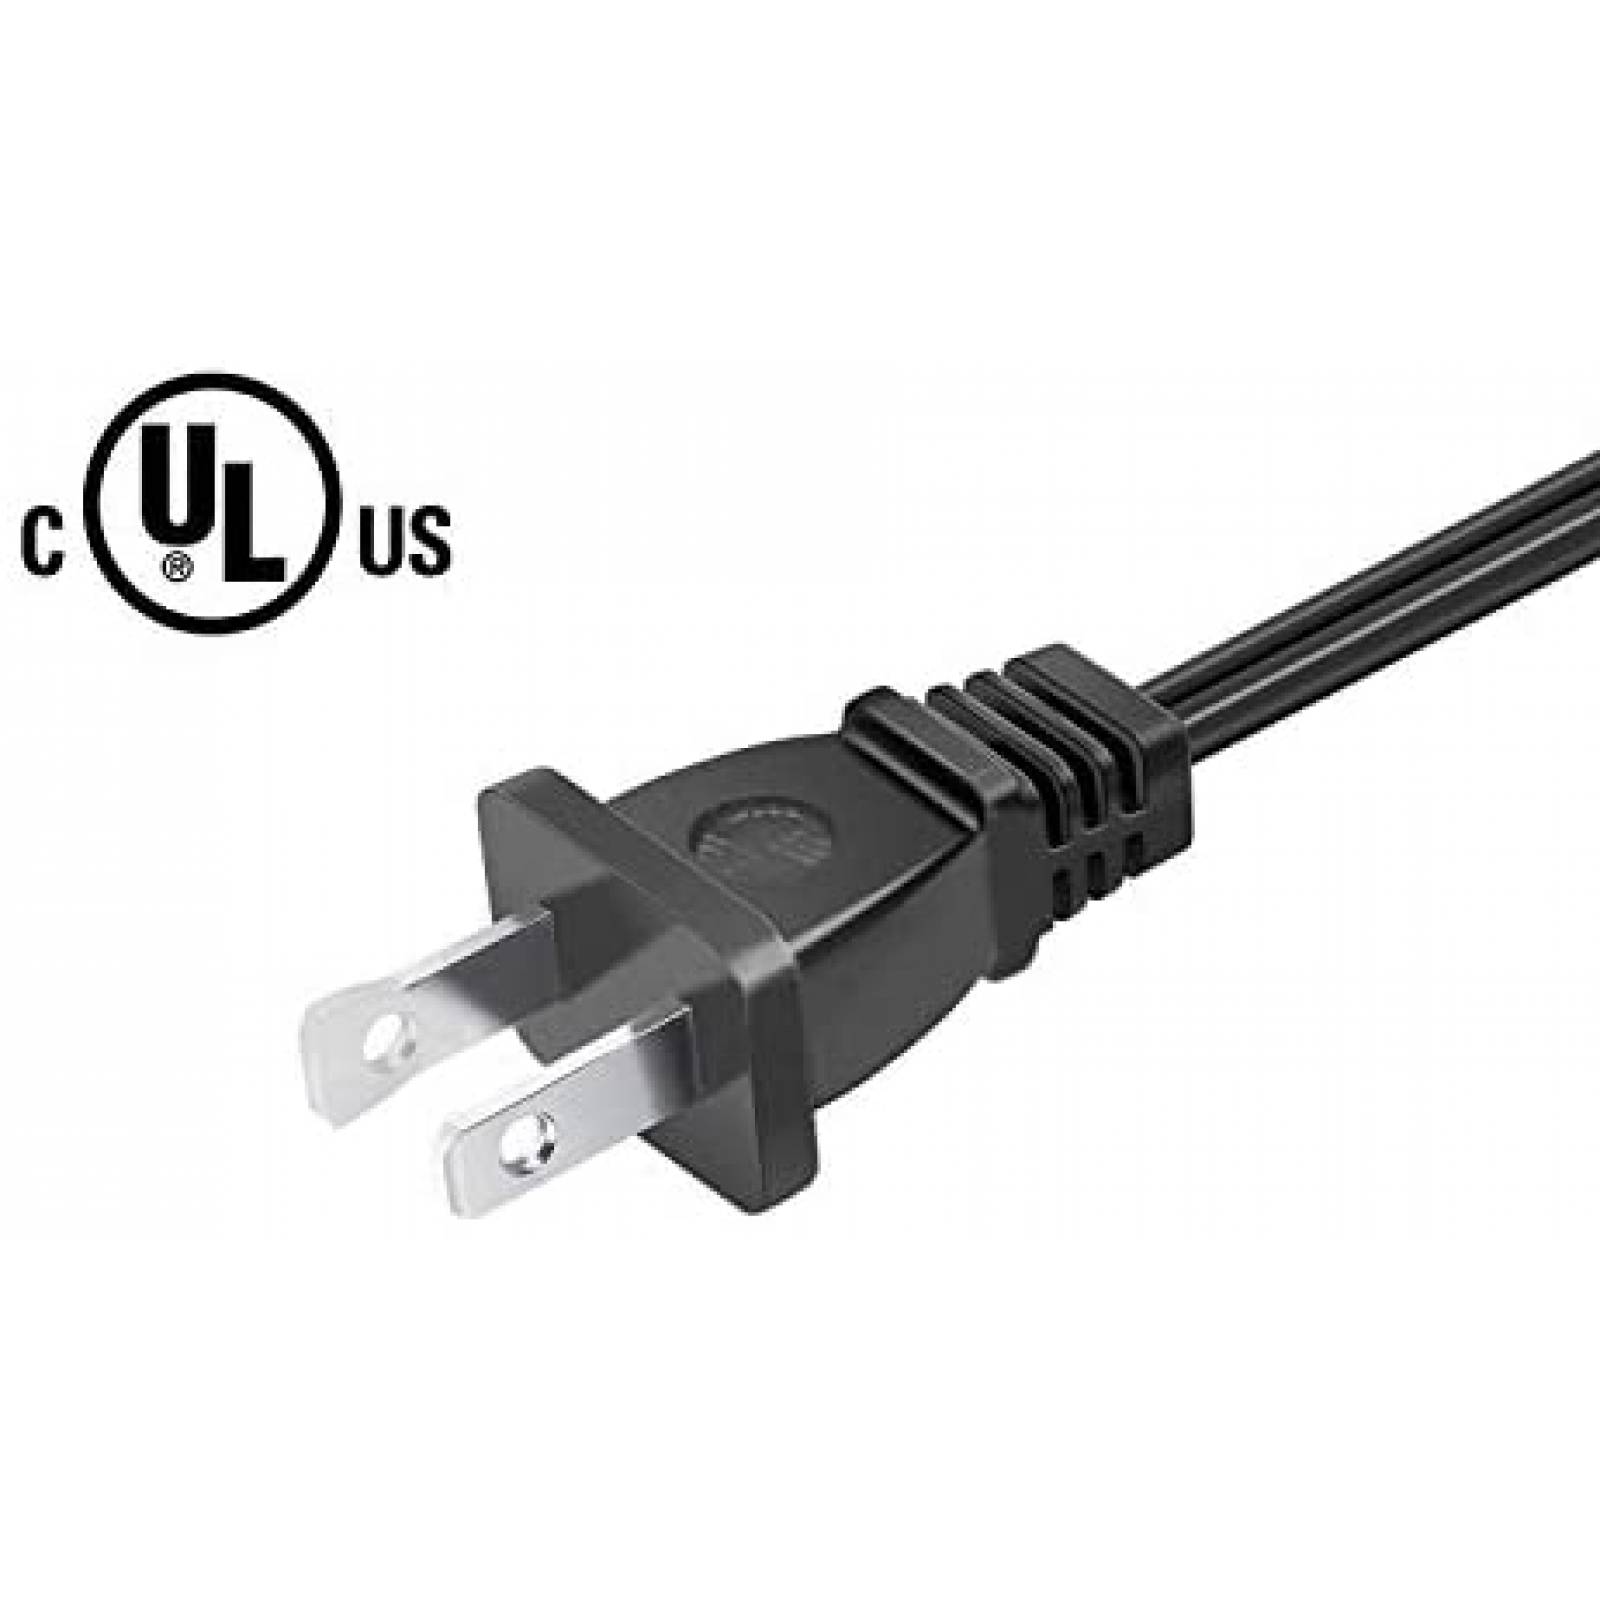  Cable de alimentación de 8.2 pies con certificación UL